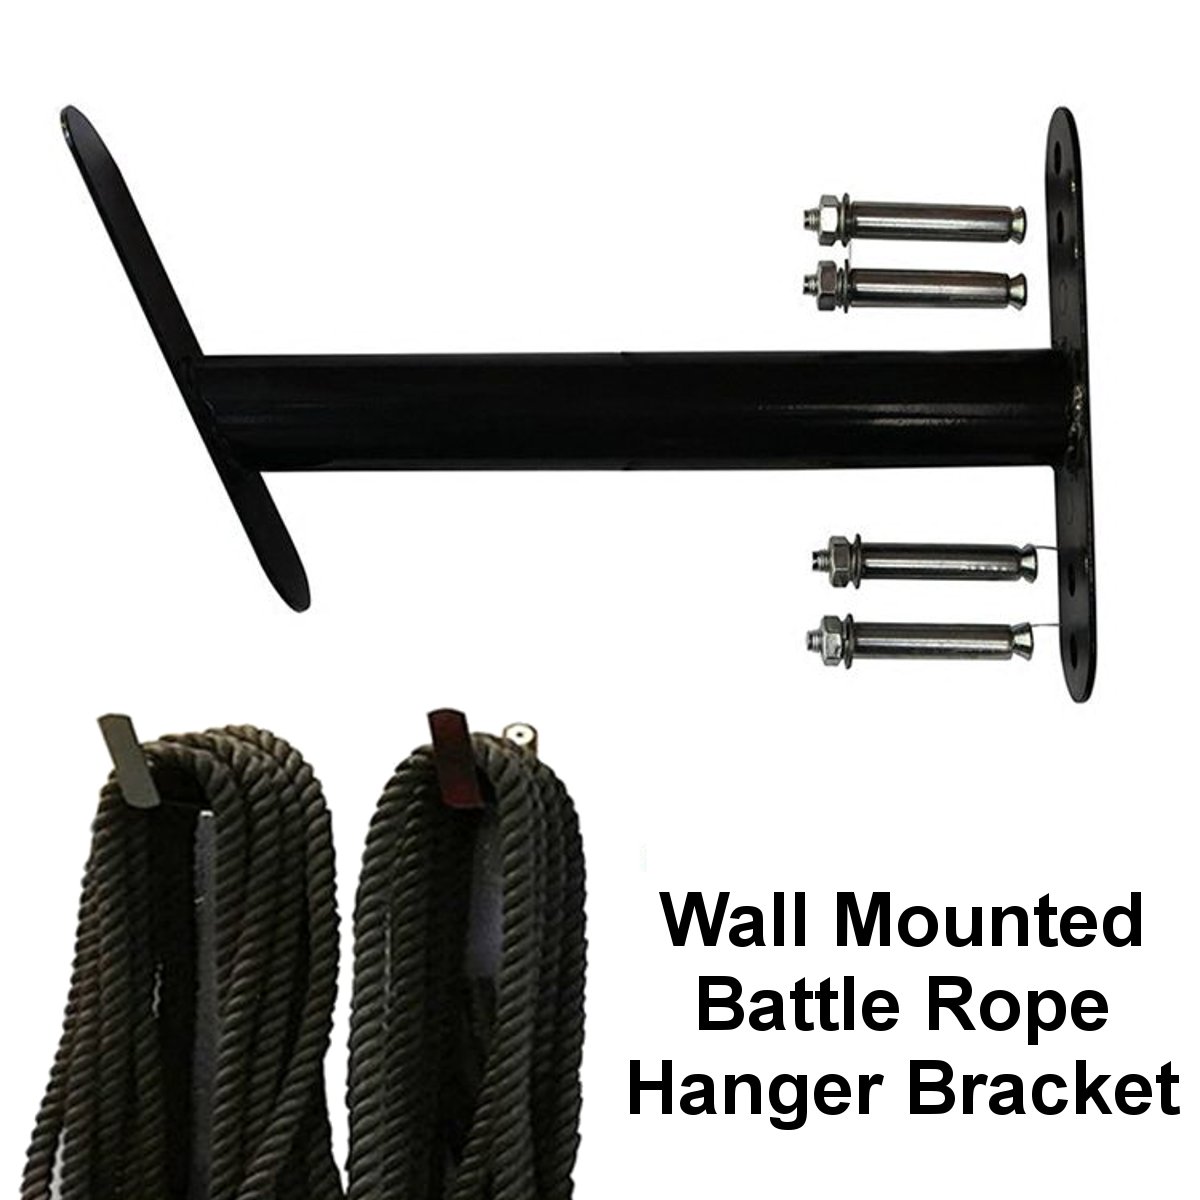 Wall-Mounted-Battle-Rope-Hanger-Bracket-Fitness-Training-Exercise-Storage-Kit-1691789